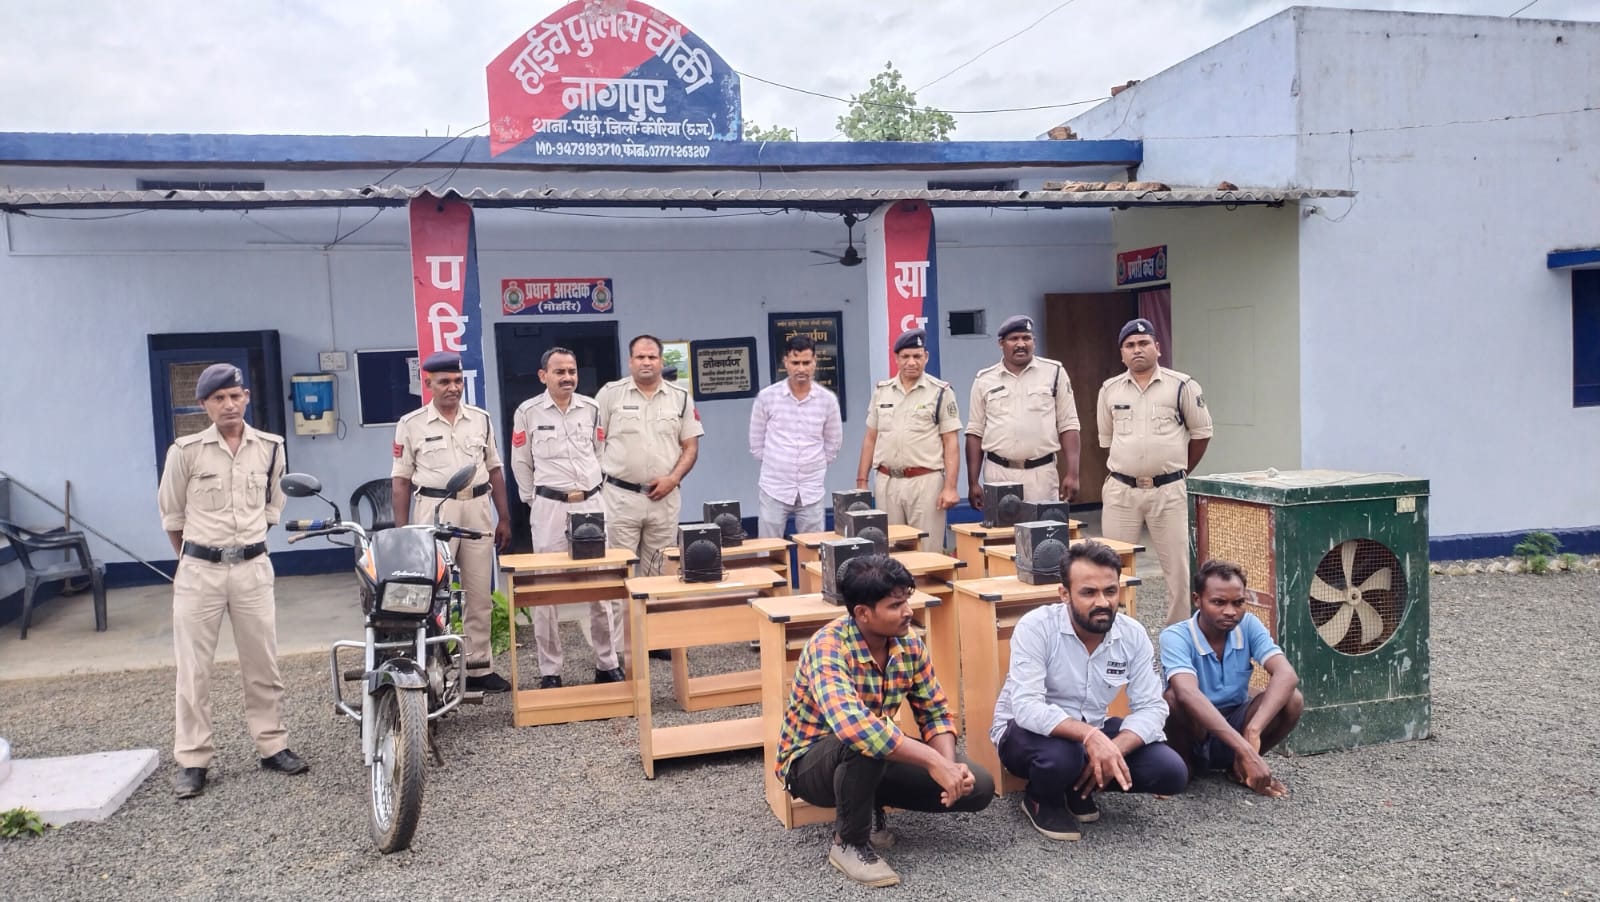 नागपुर स्कूल से कूलर व नौ कम्प्यूटर टेबल चोरी, लैब तकनीशियन सहित तीन स्टाफ गिरफ्तार